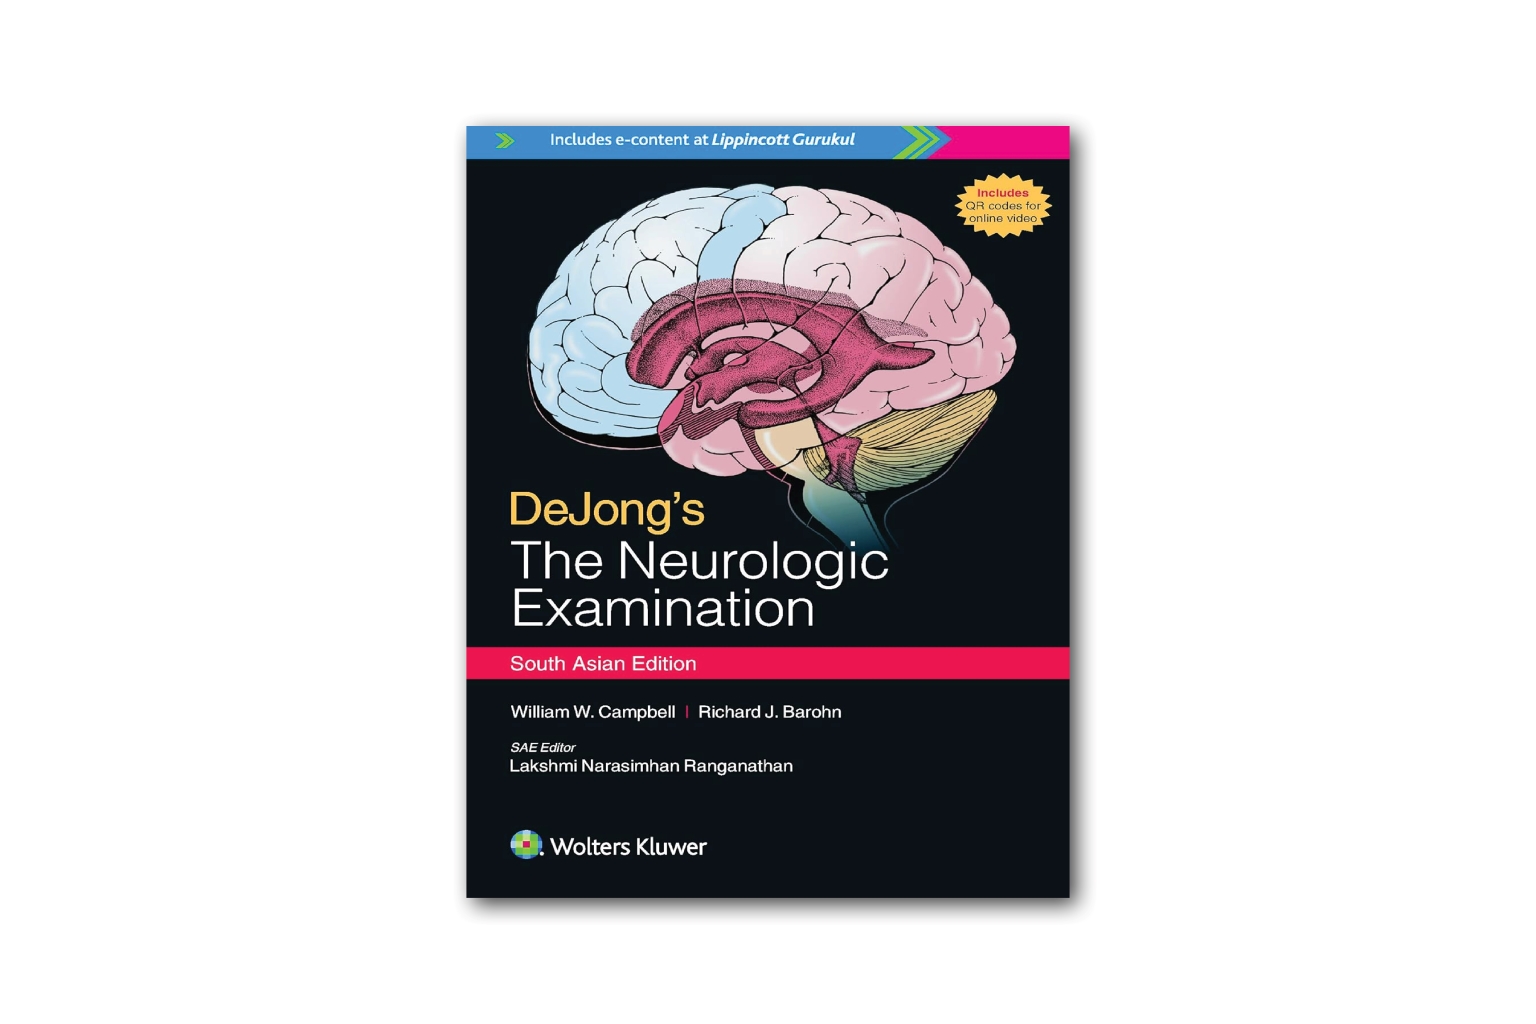 DeJong's The Neurologic Examination South Asian Edition e-content book cover.